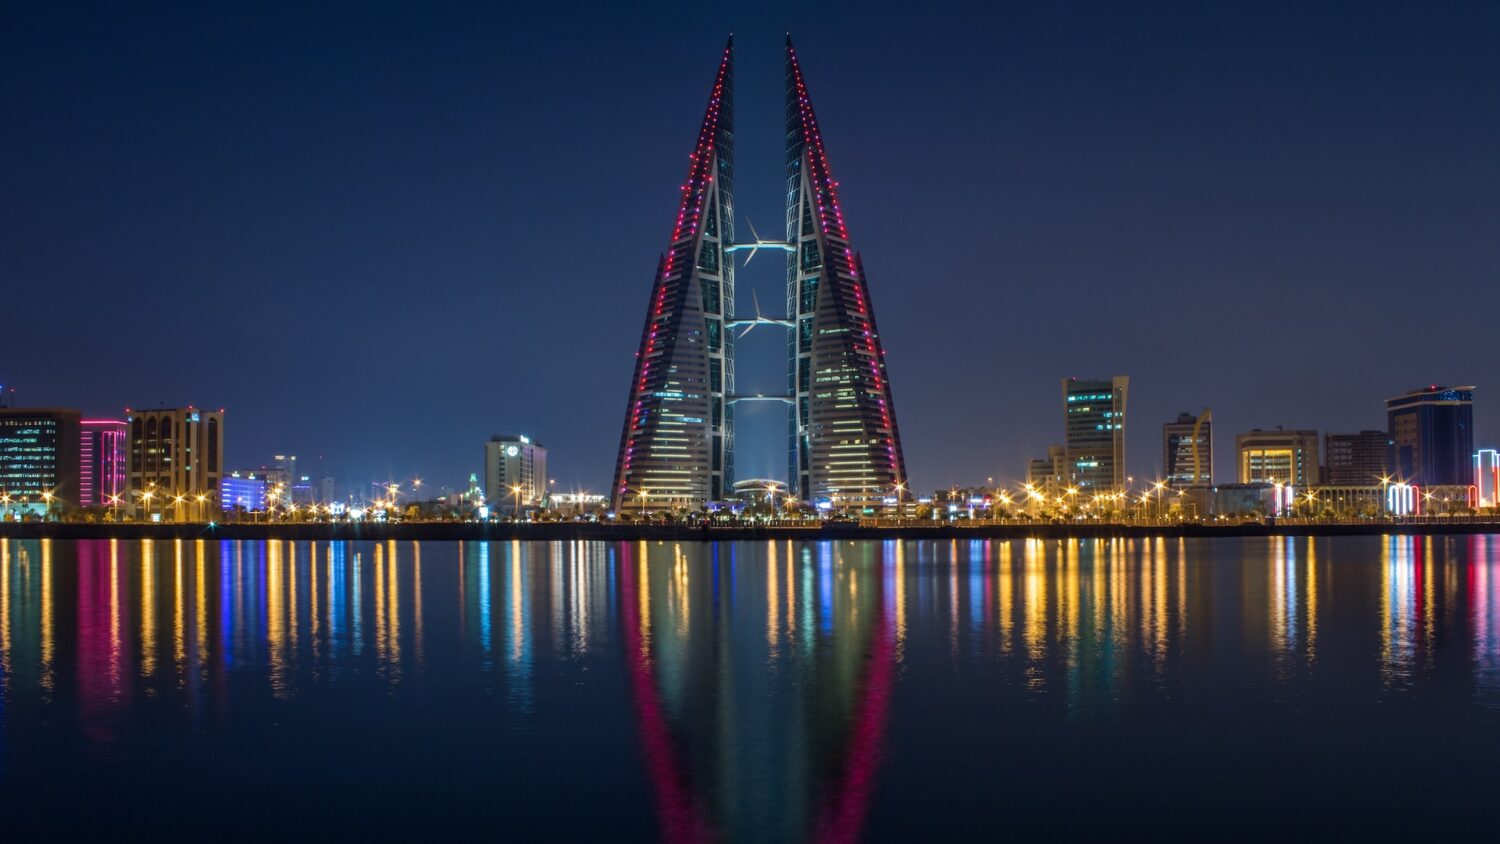 Cidade de Manama em Bahrein de noite com prédios iluminados e lago cristalino a frente refletindo as luzes.